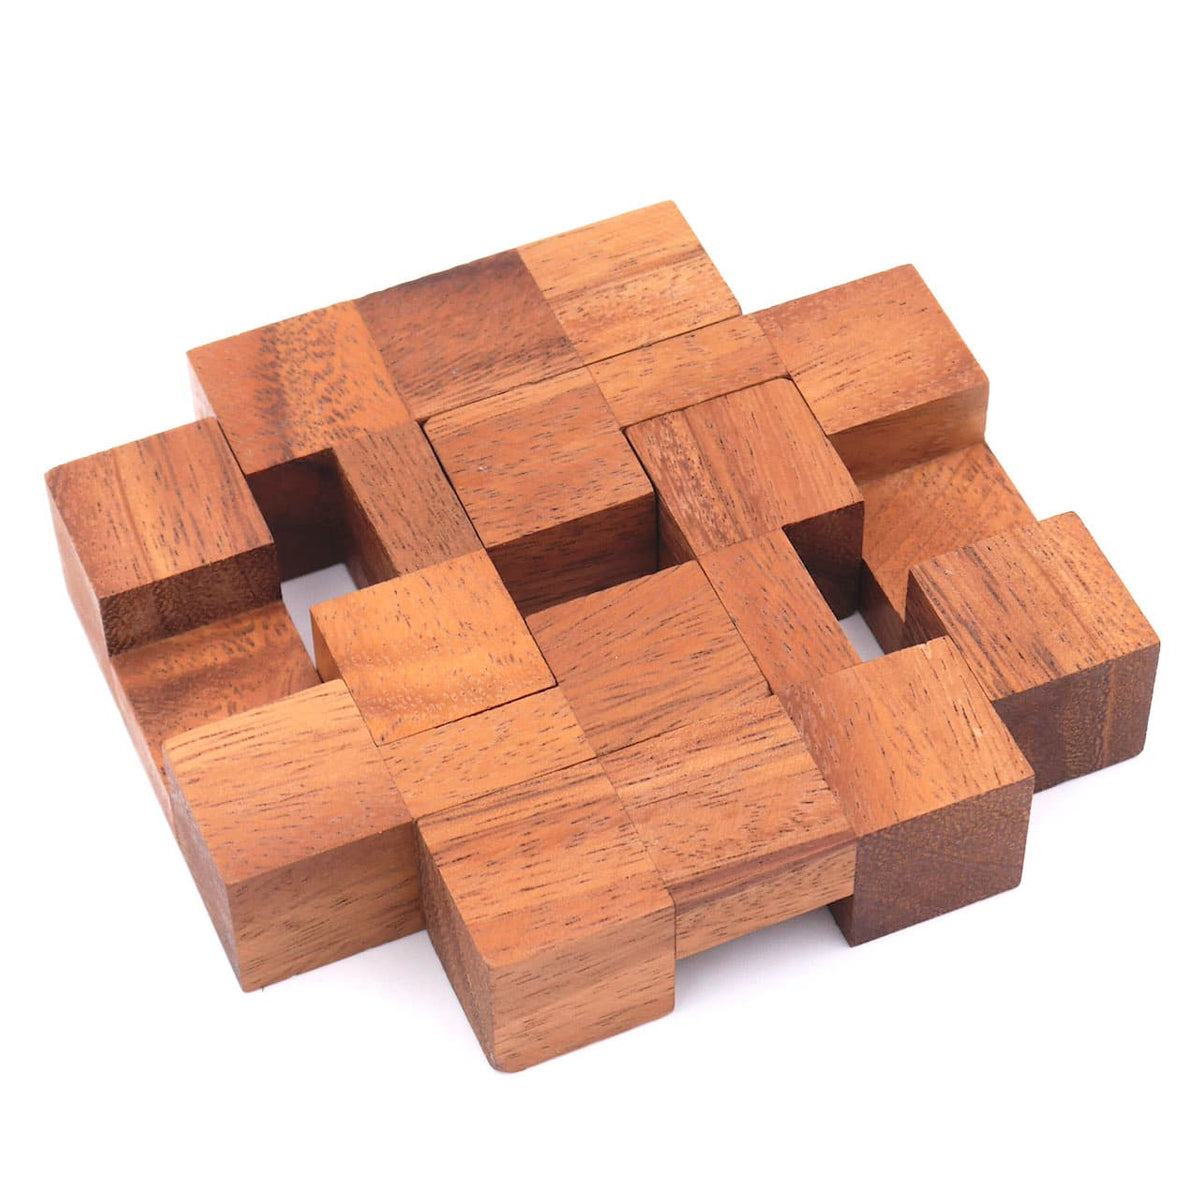 STUFFING BURR - wirklich cleveres Puzzle mit 2 bekannten Lösungen, inkl. Baumwollbeutel